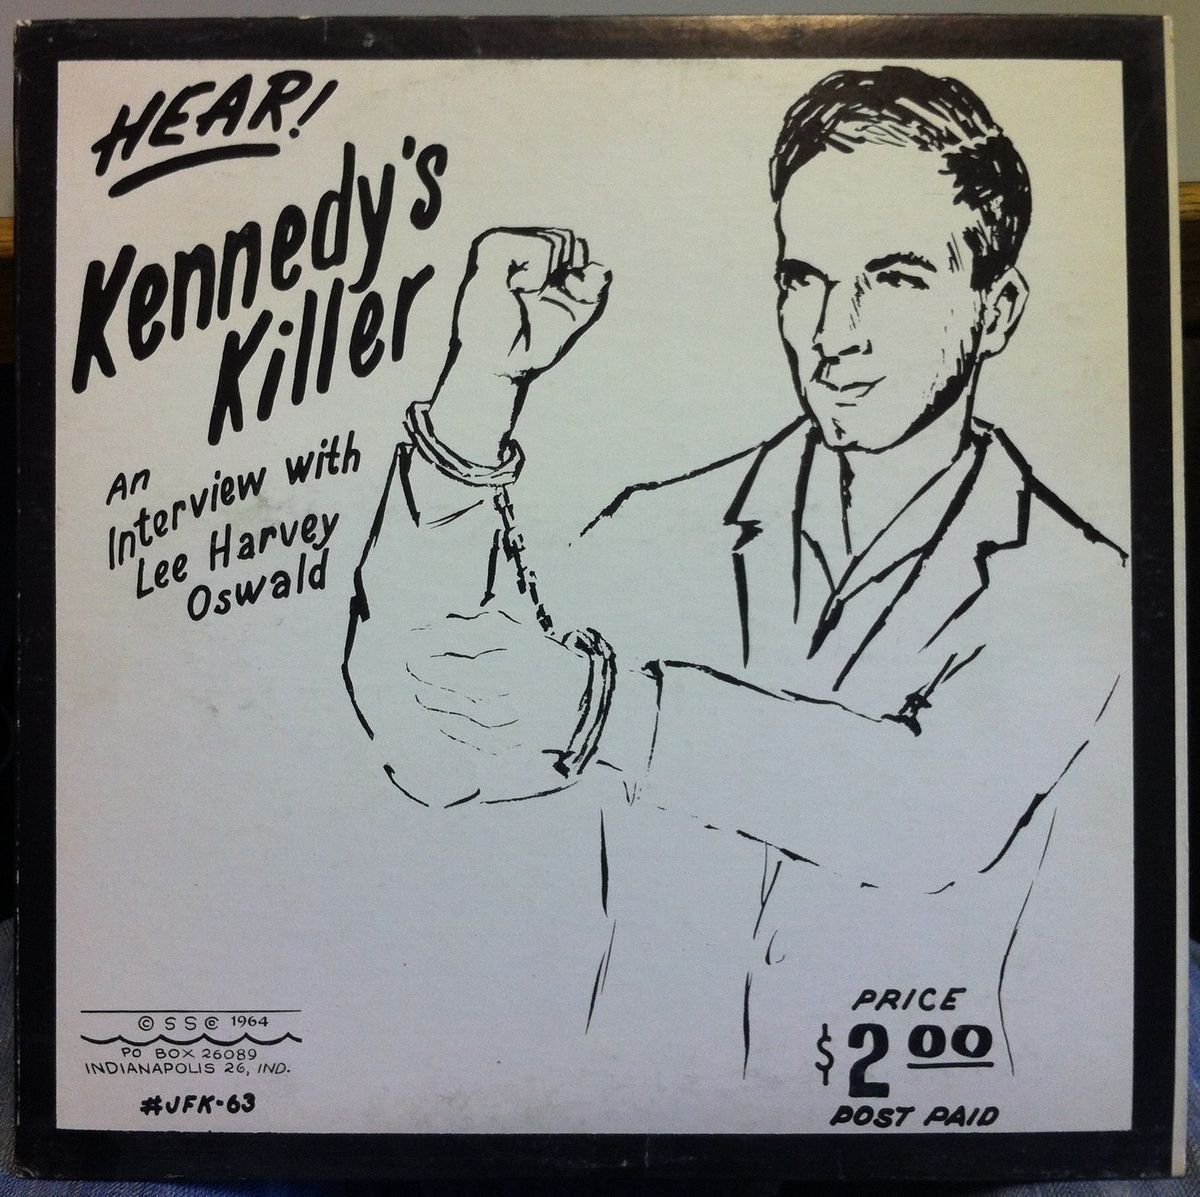 Lee Harvey Oswald Hear Kennedys Killer JFK LP VG 1964 Private w Lots